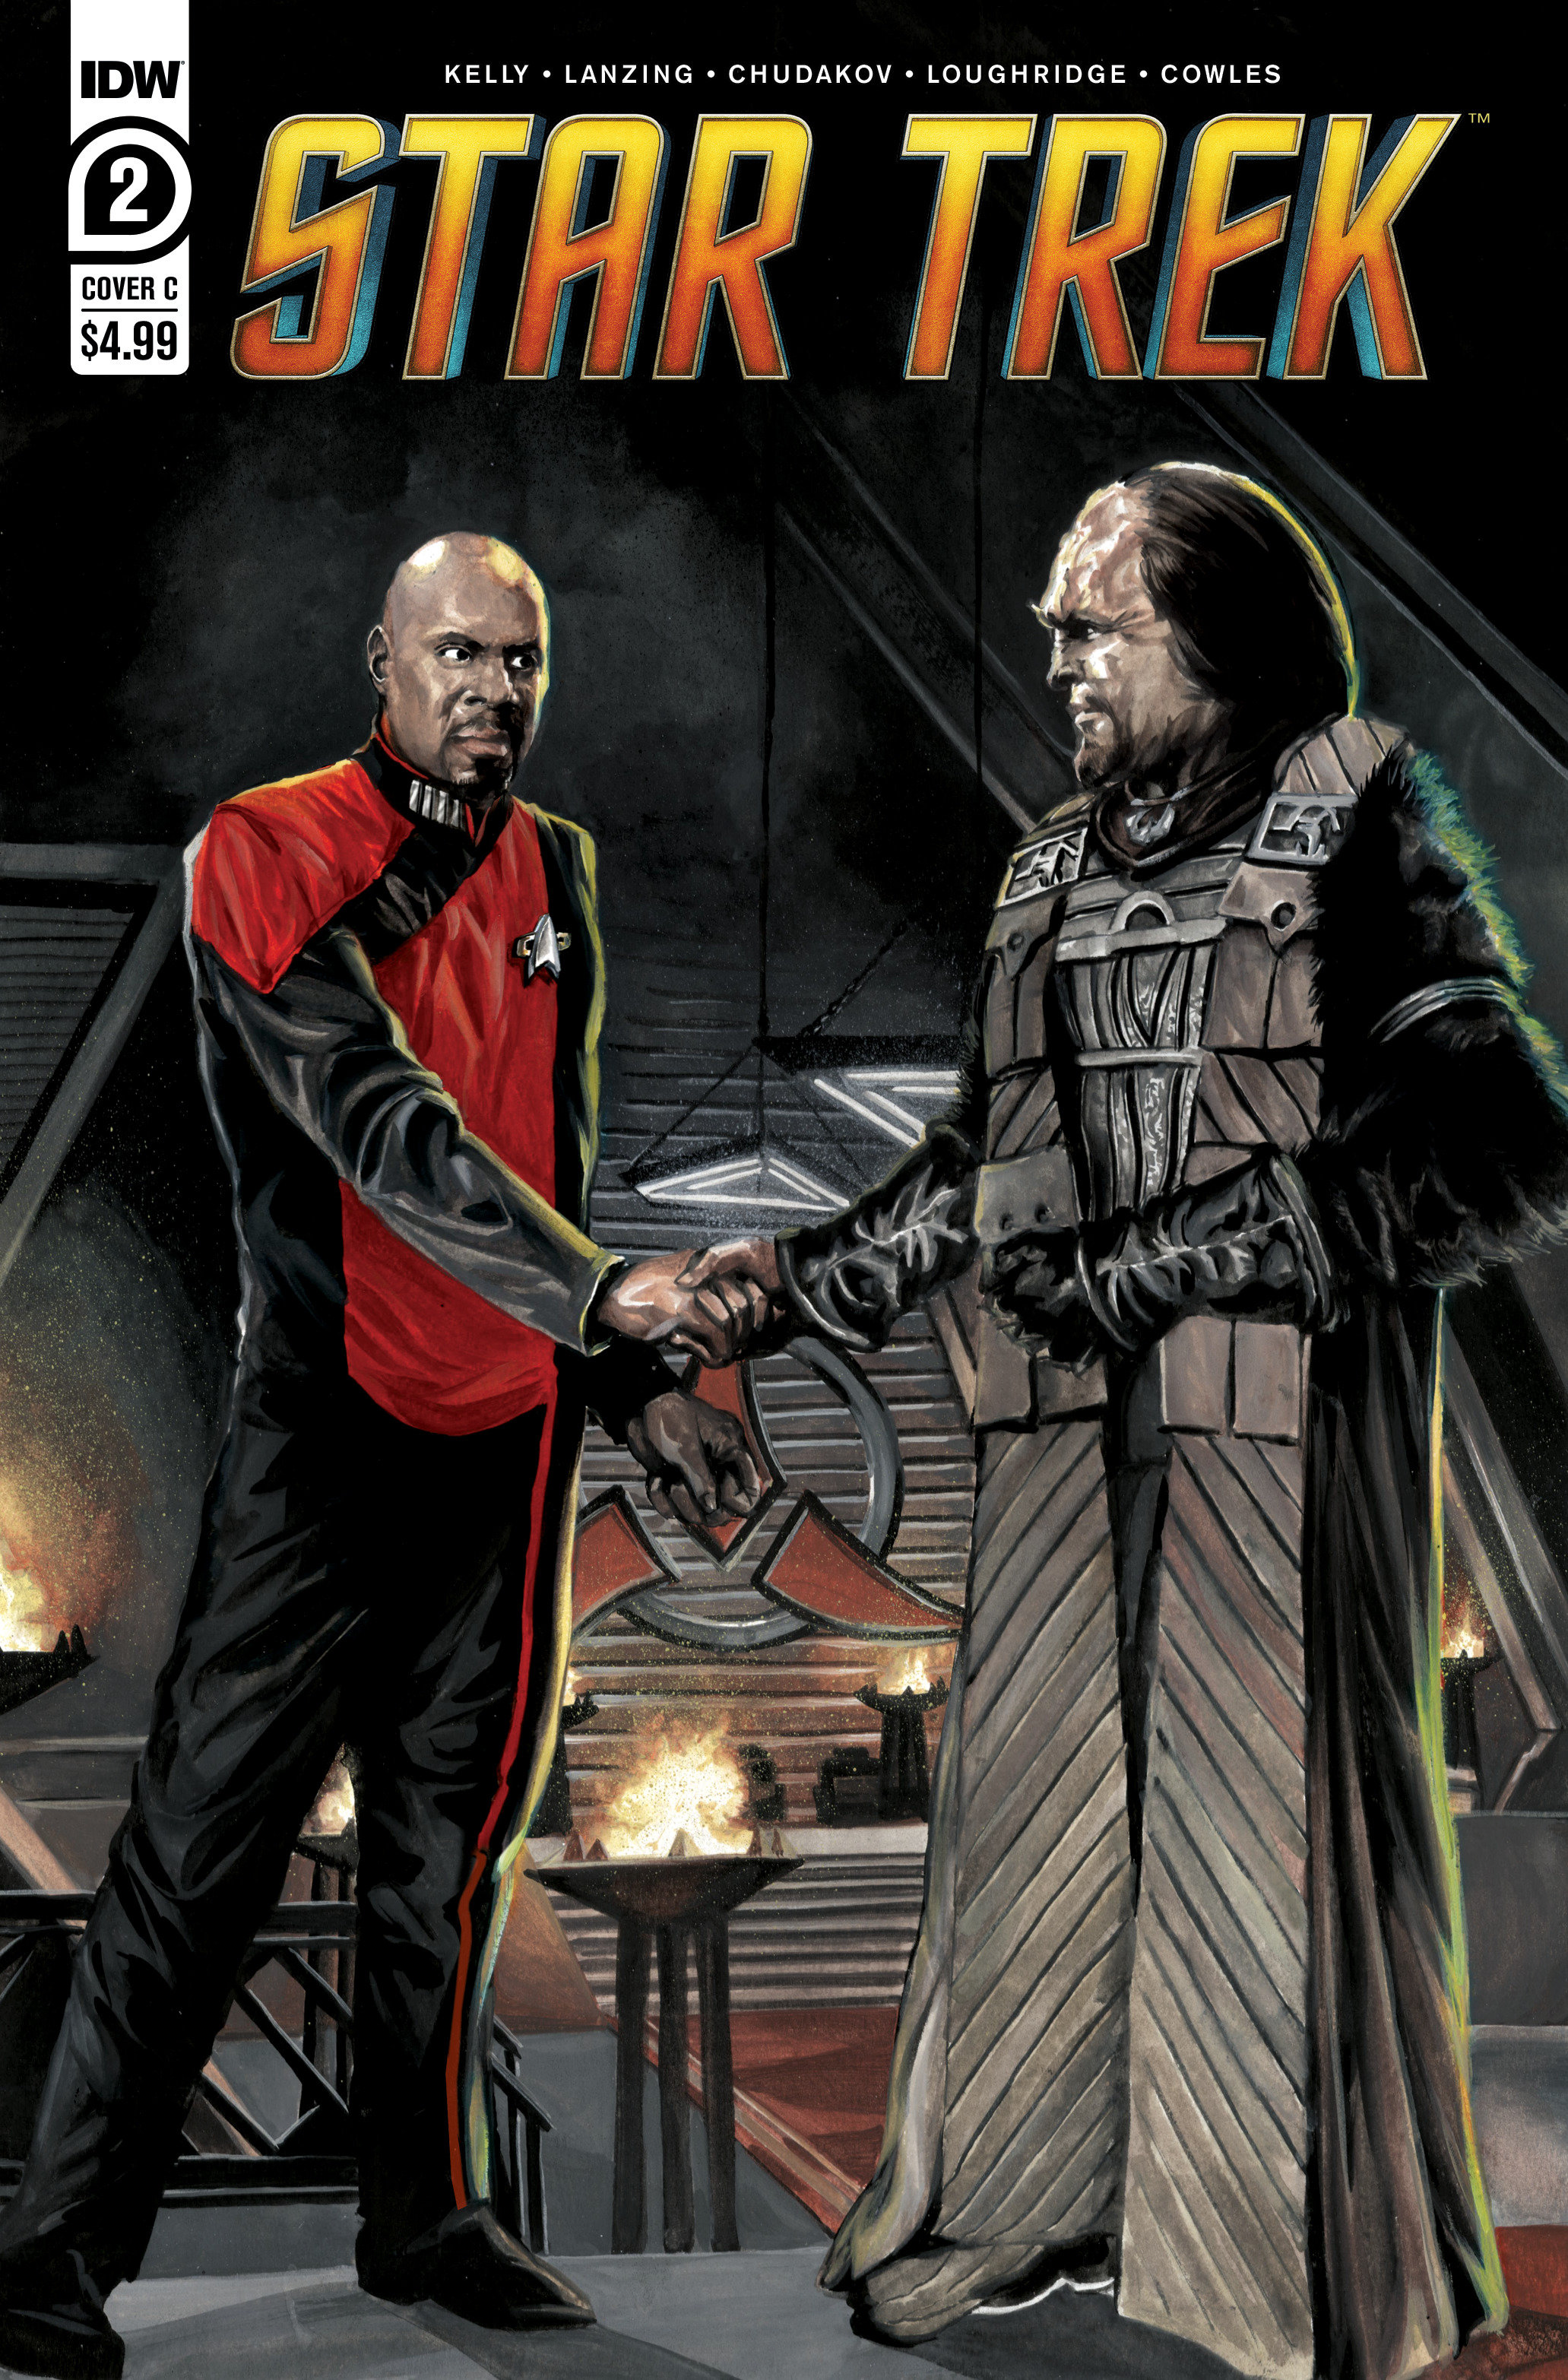 Star Trek #2 Cover C